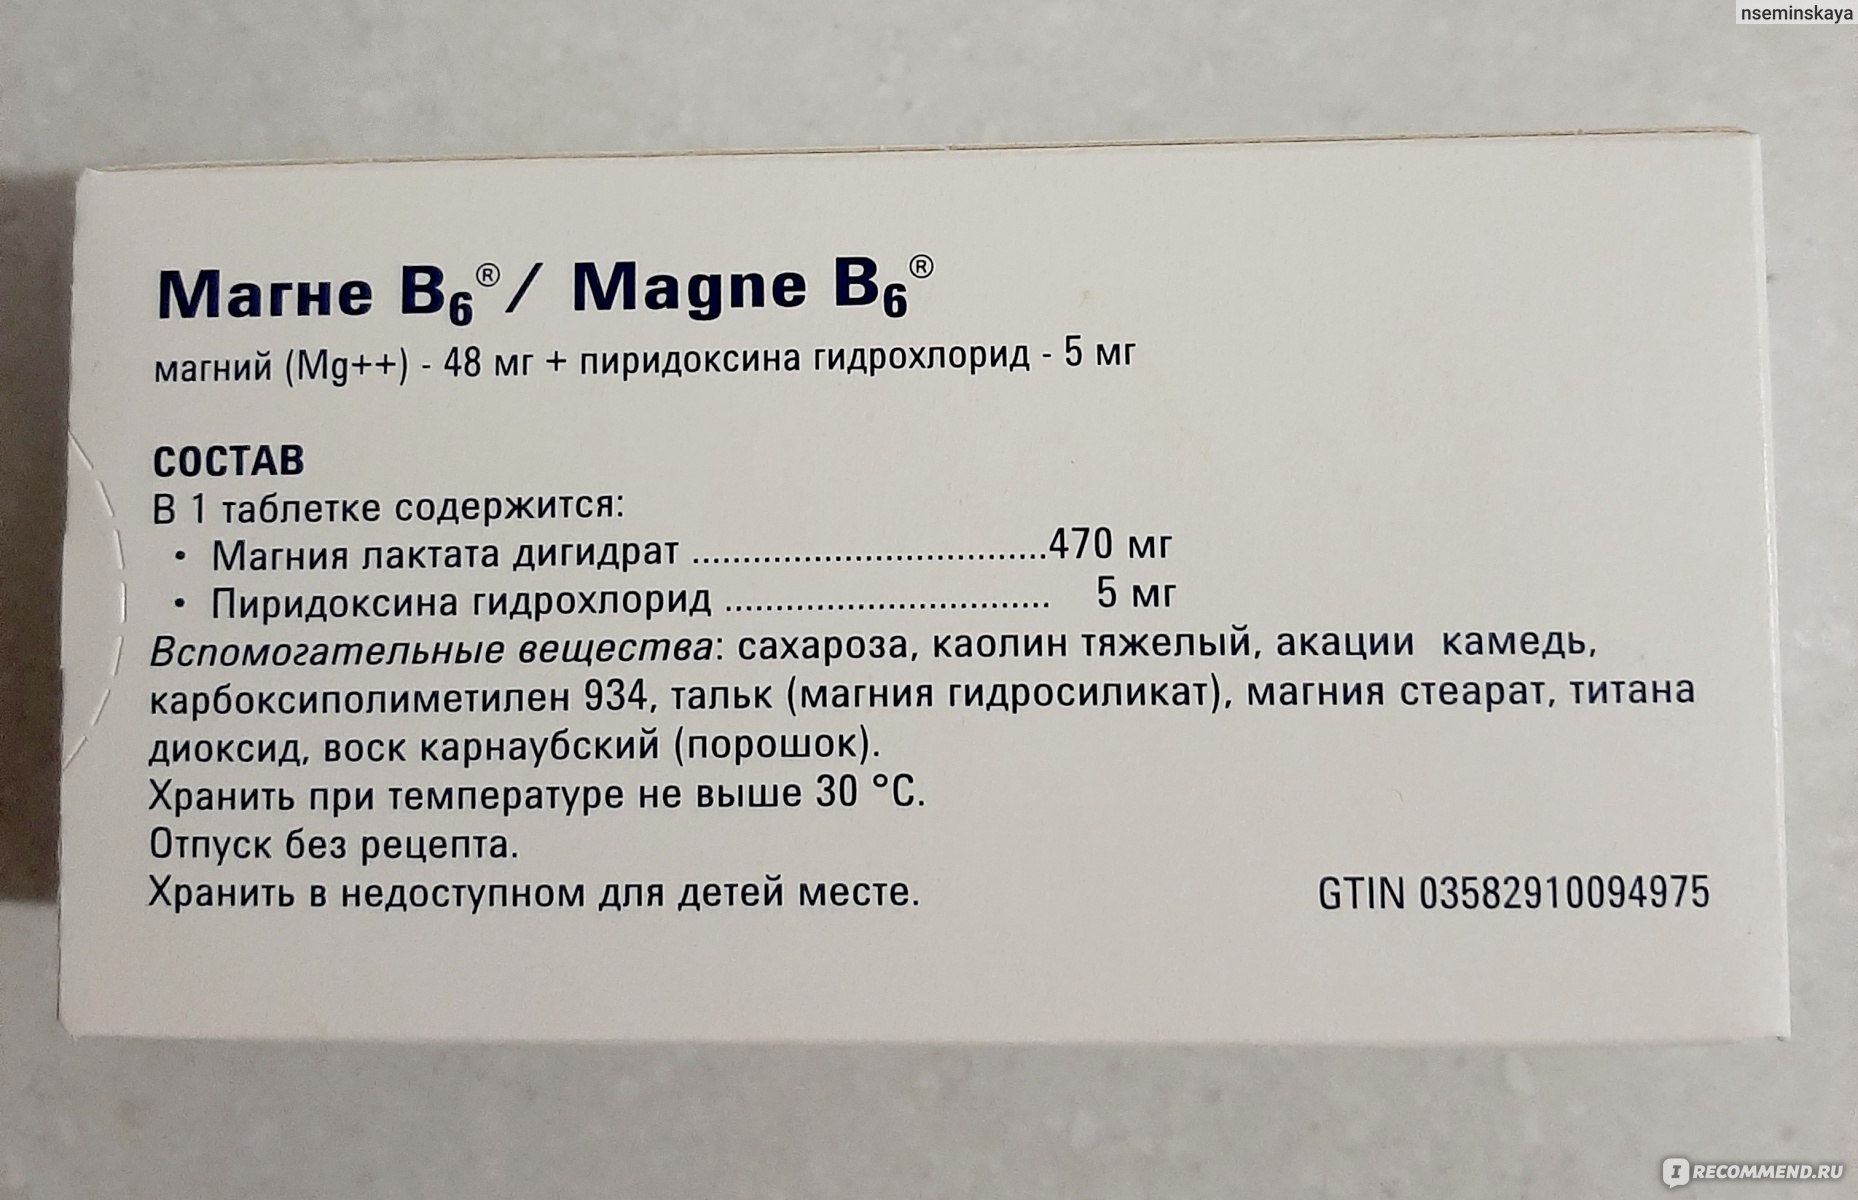 Магний в6 побочные эффекты у взрослых. Магний б6 + пиридоксина гидрохлорид. Магне в6 магний пиридоксина гидрохлорид. Магний б6 (магний лактат+пиридоксина гидрохлорид. Магния лактат 470 мг пиридоксина гидрохлорид 5 мг.